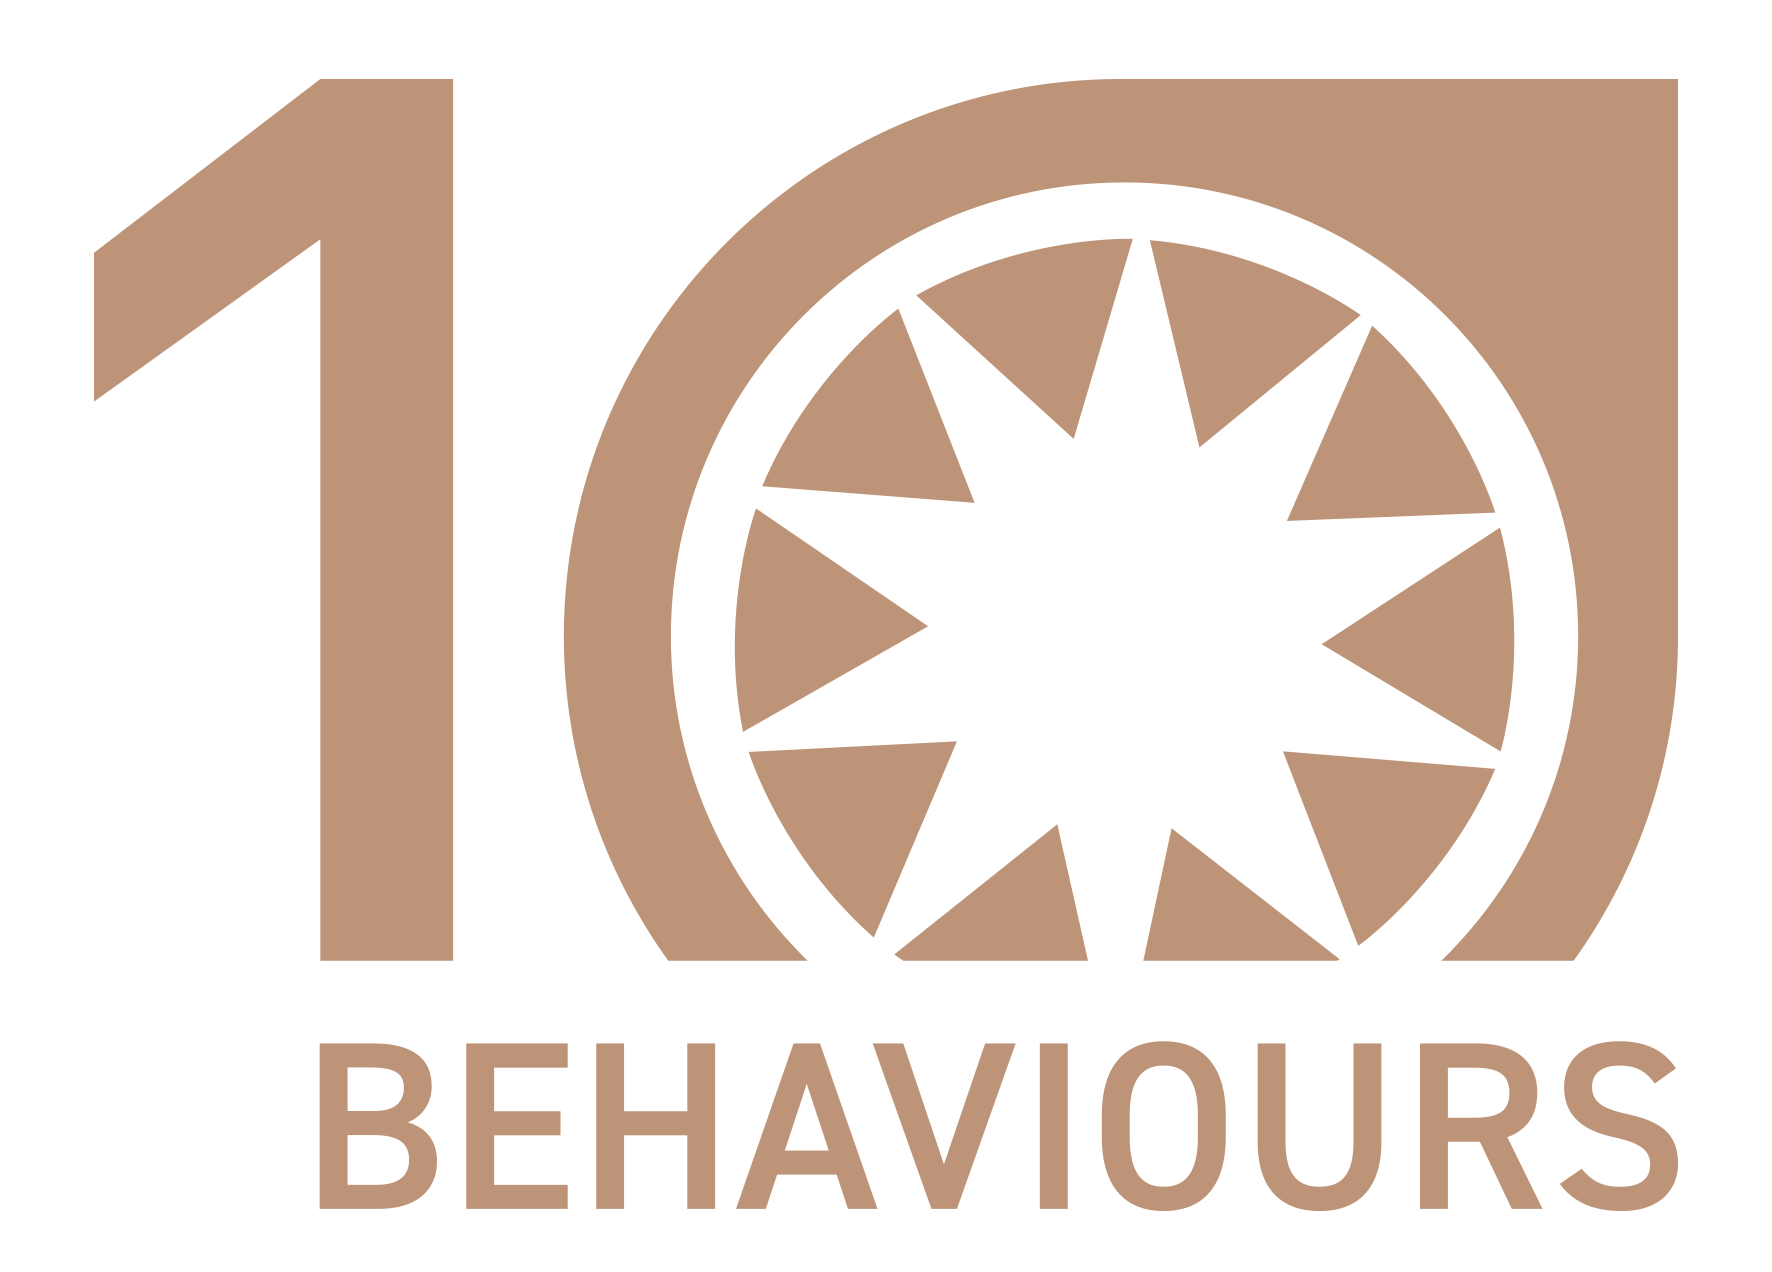 THE 10 BEHAVIOURS